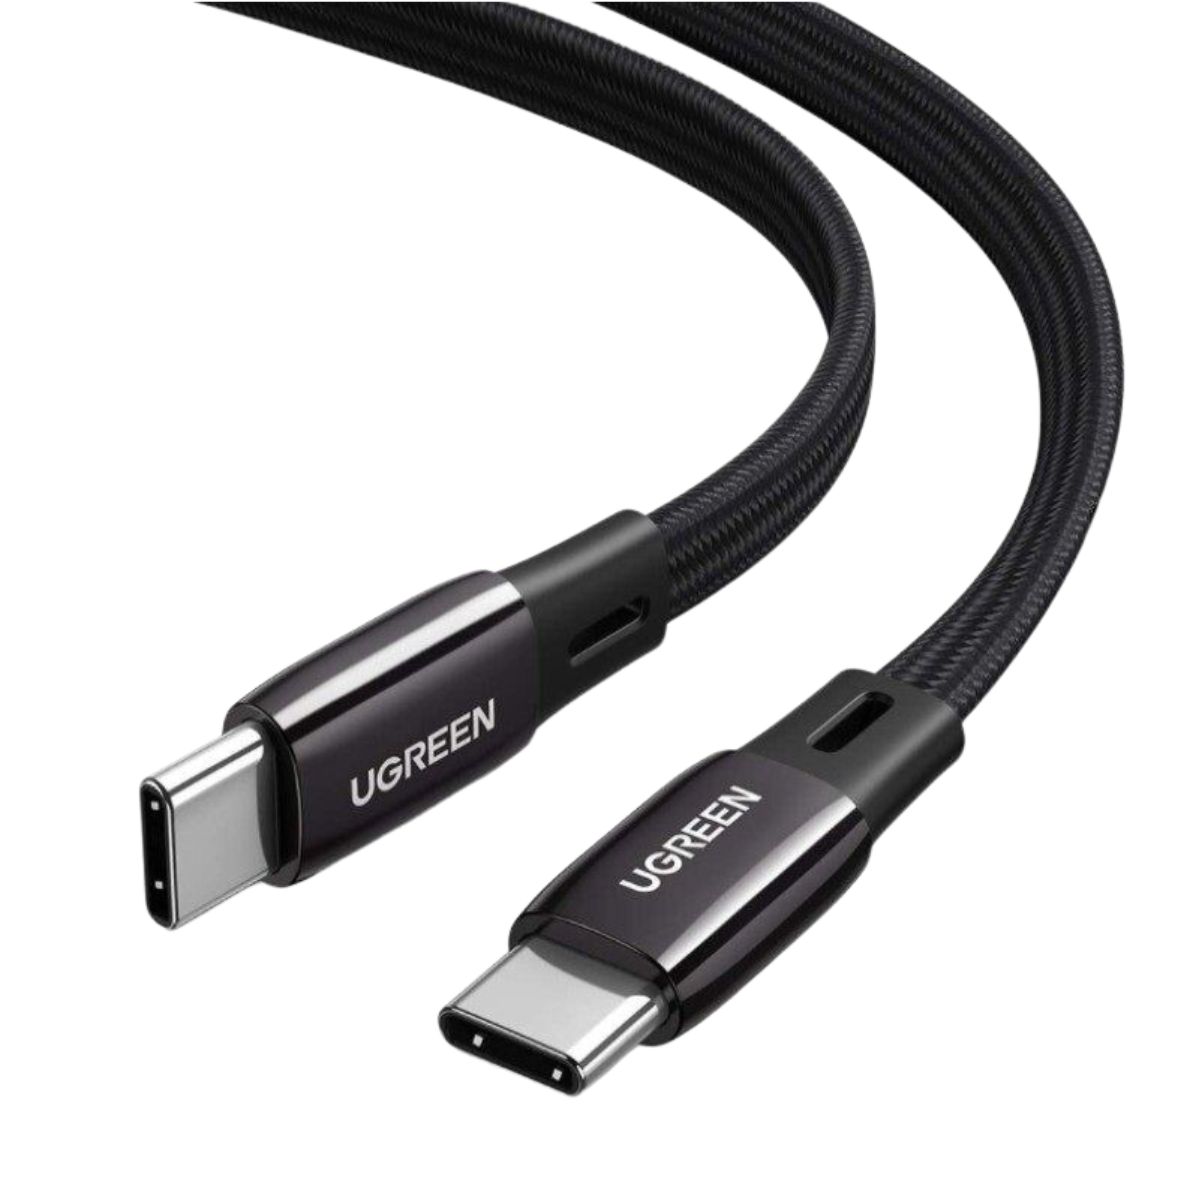 Cáp sạc 2m USB-C đến USB-C Ugreen 10969 US331 màu đen, hỗ trợ sạc nhanh 3A, tốc độ truyền 480Mbps